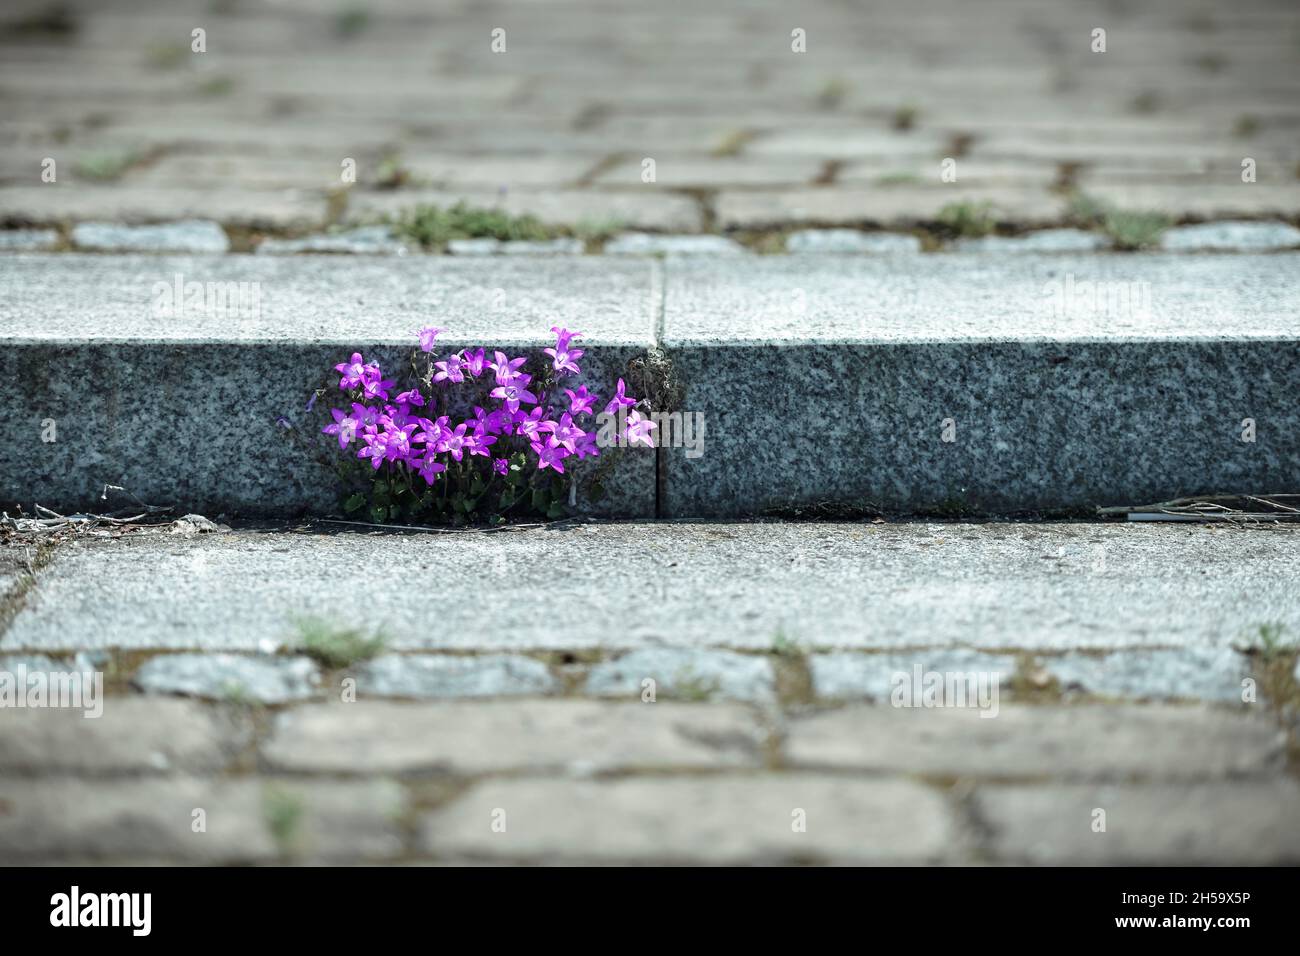 Glockenblume, Campanula, wächst an einer Treppe Foto de stock